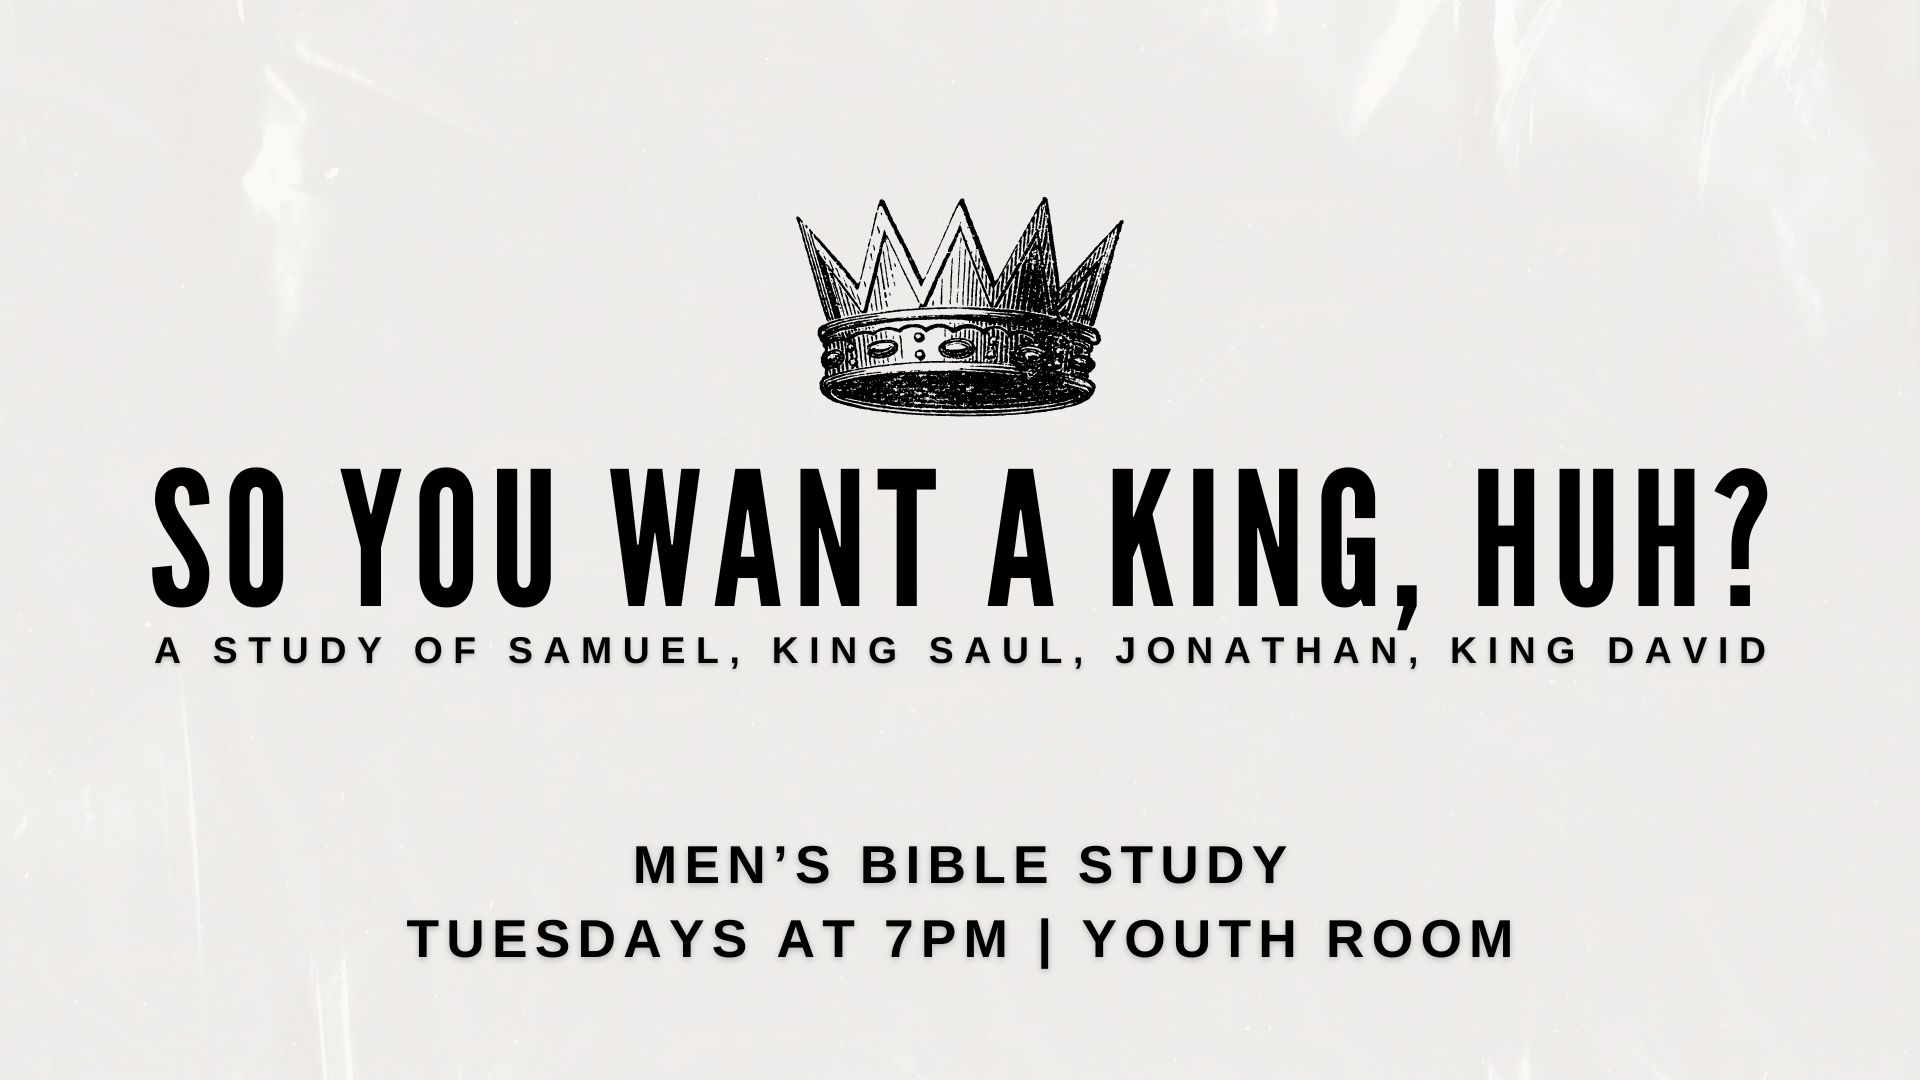 Men's bible study OT KINGS